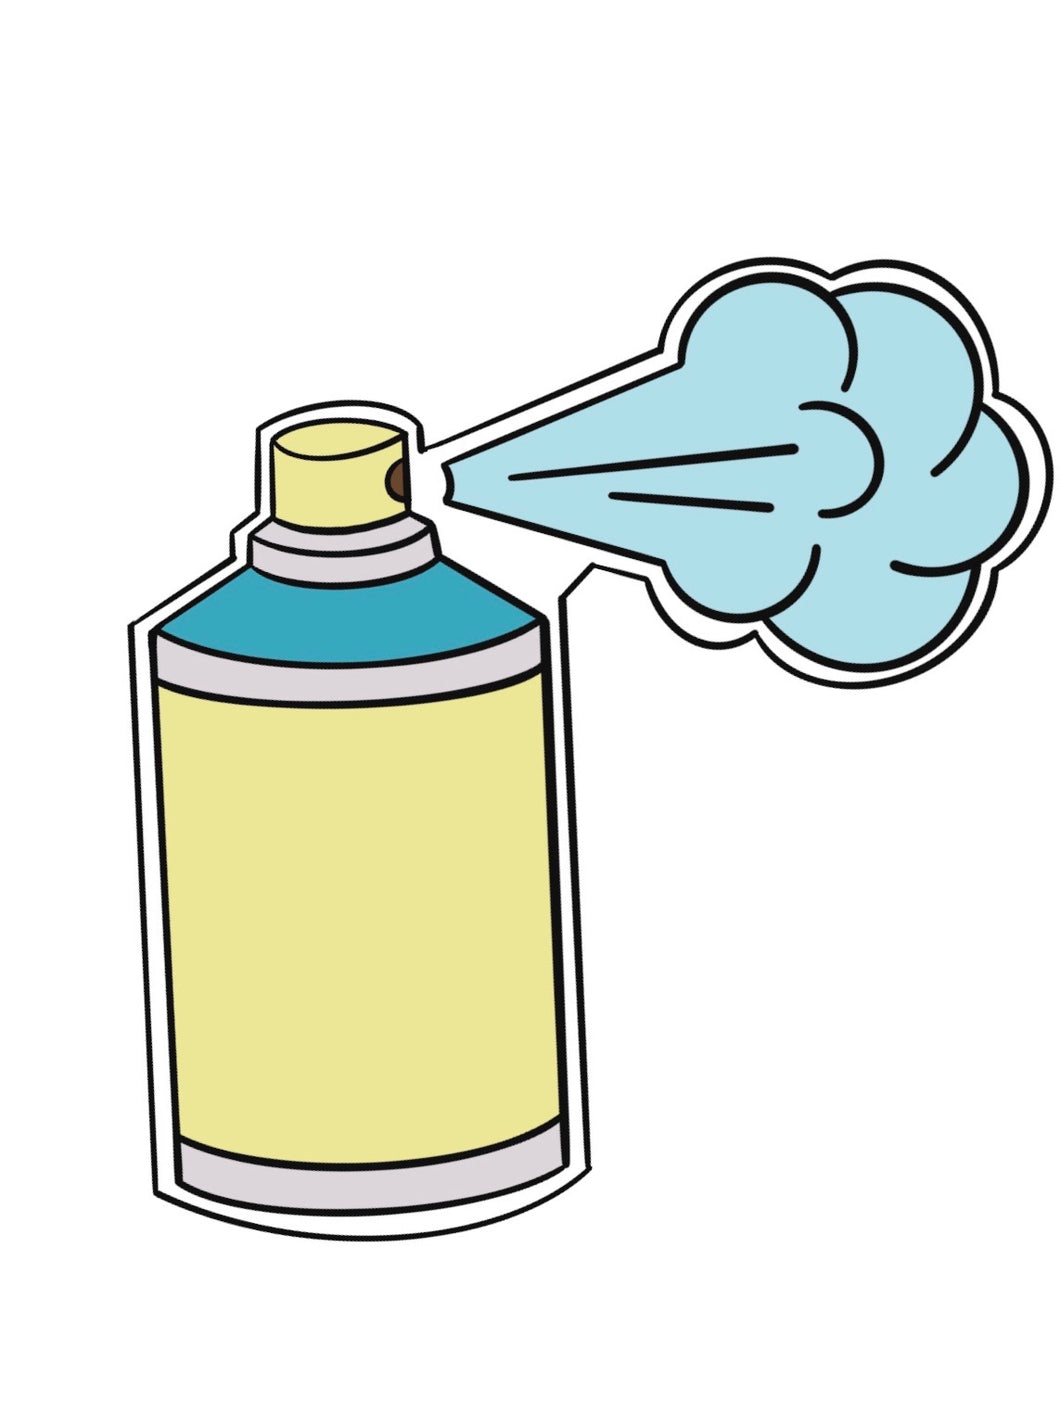 Disinfectant Spray